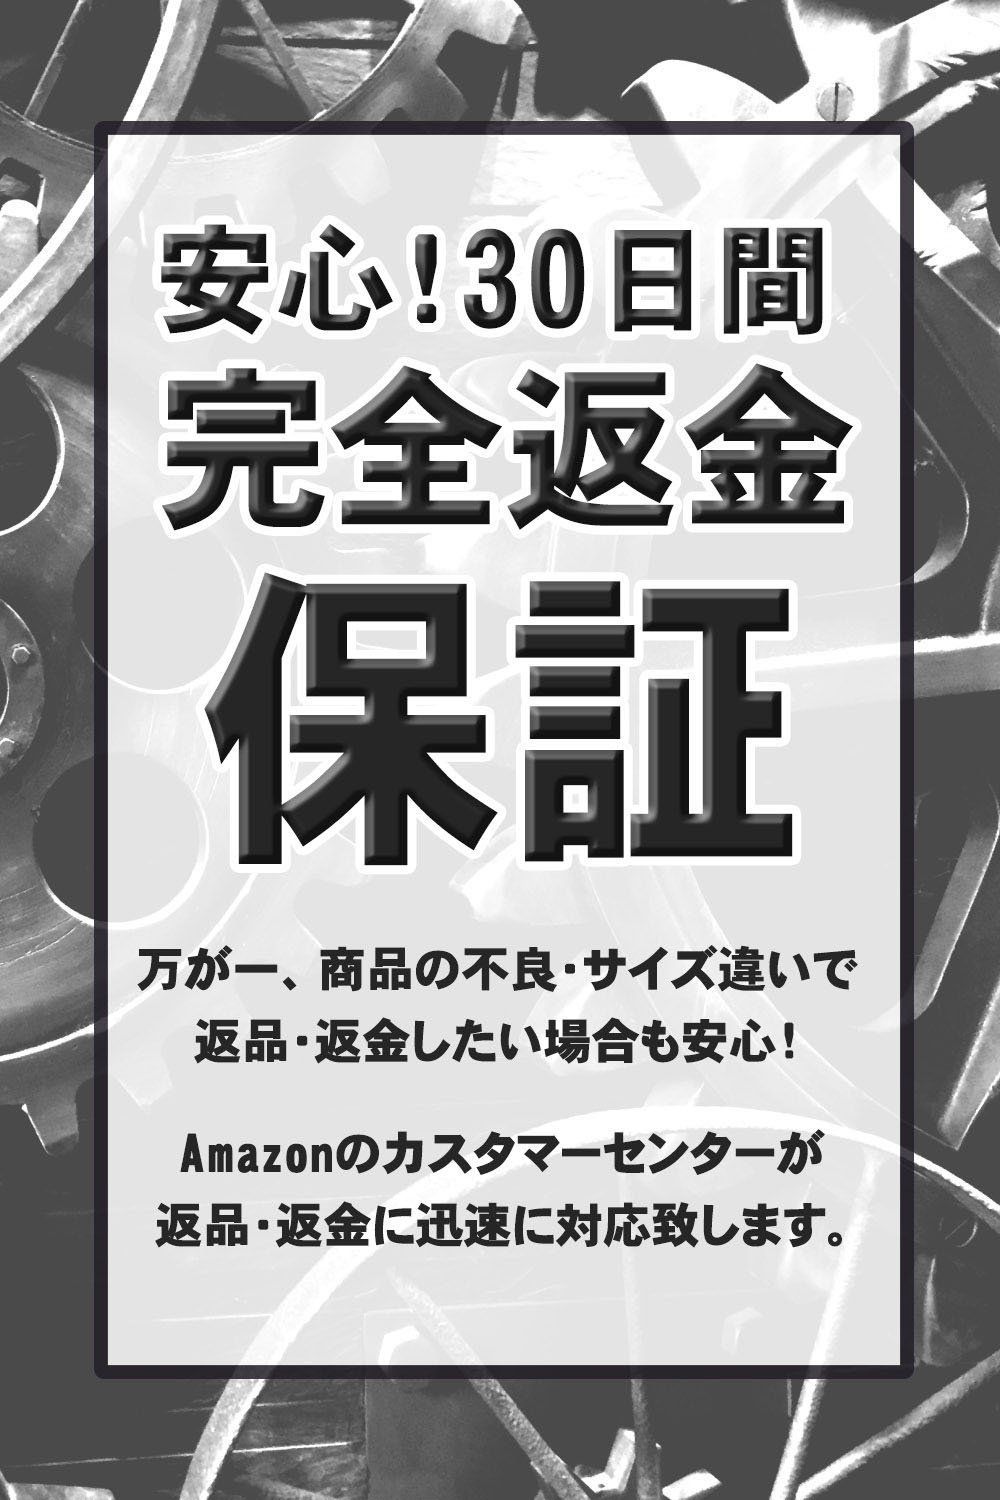 【色:01シルバー】mikketa 貯金箱 お札 硬貨 マイパーソナル ダイヤル